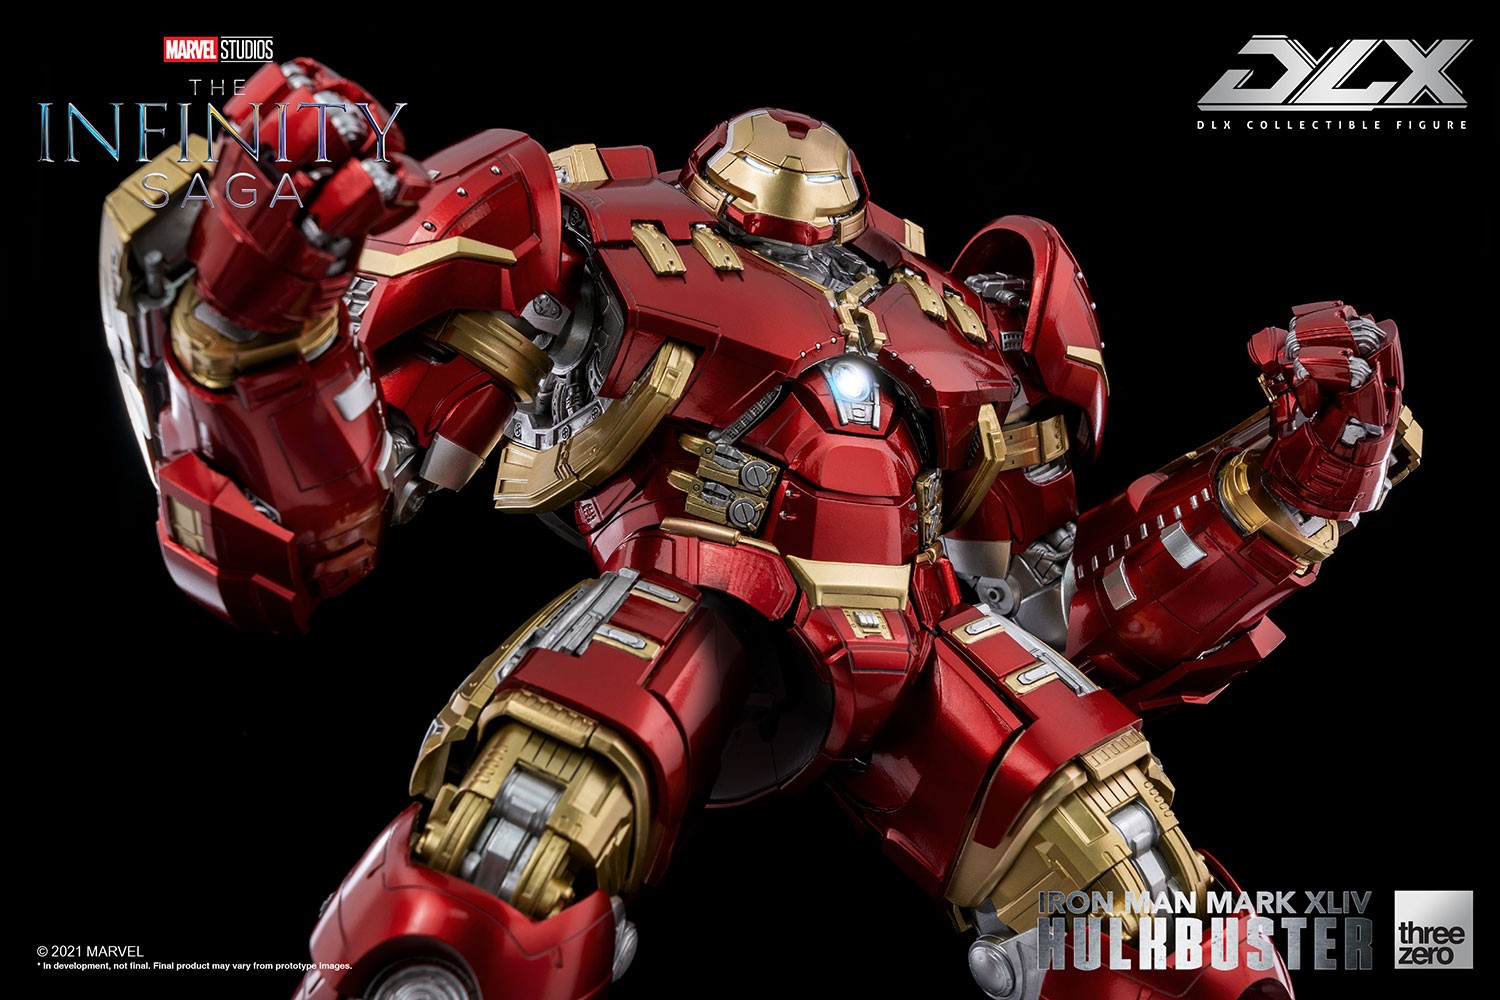 DLX Iron Man Mark XLIV Hulkbuster